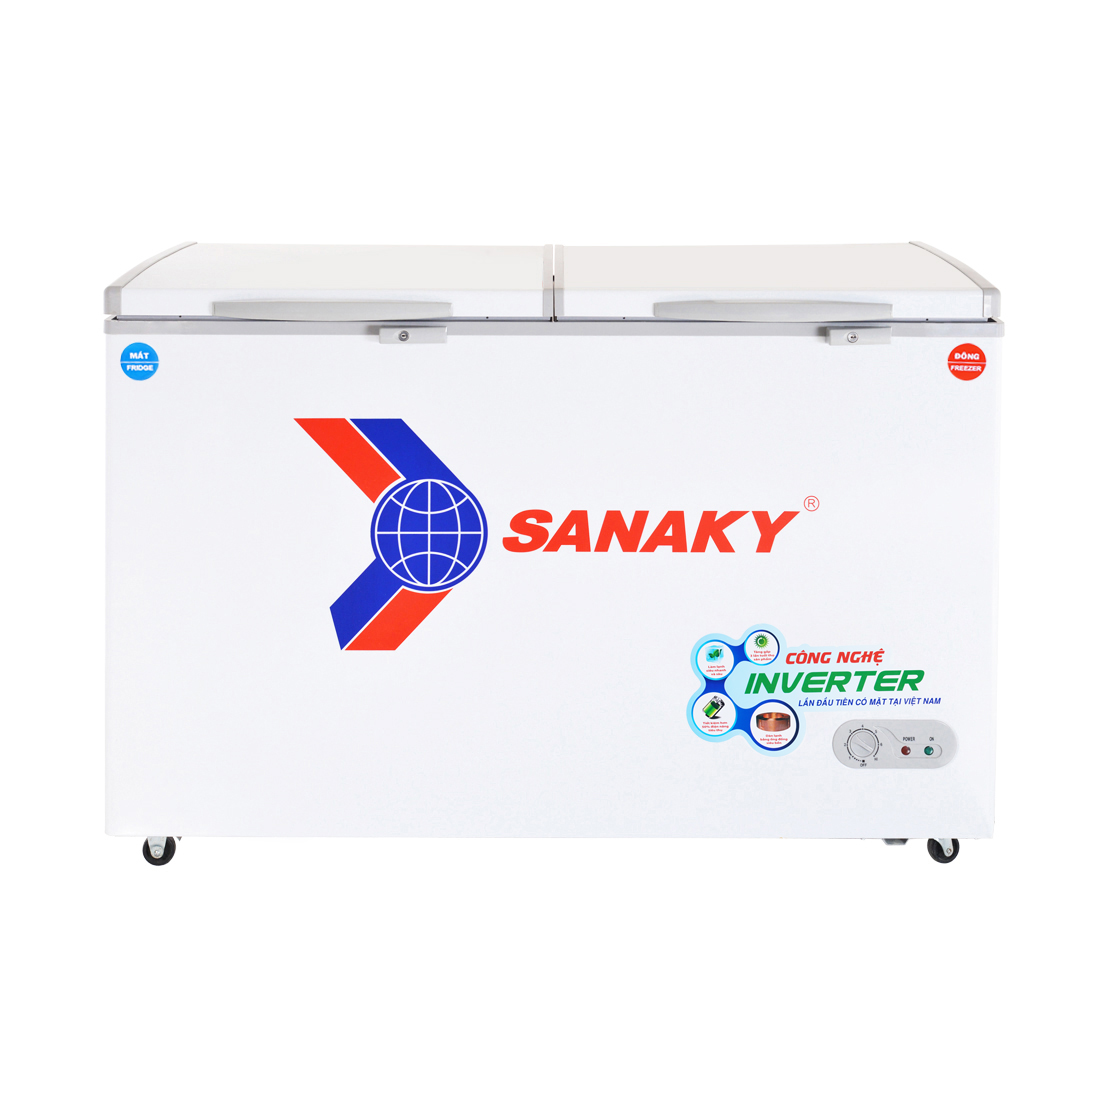 Hình ảnh Tủ Đông Sanaky VH-5699W3 (400L) - Hàng Chính Hãng